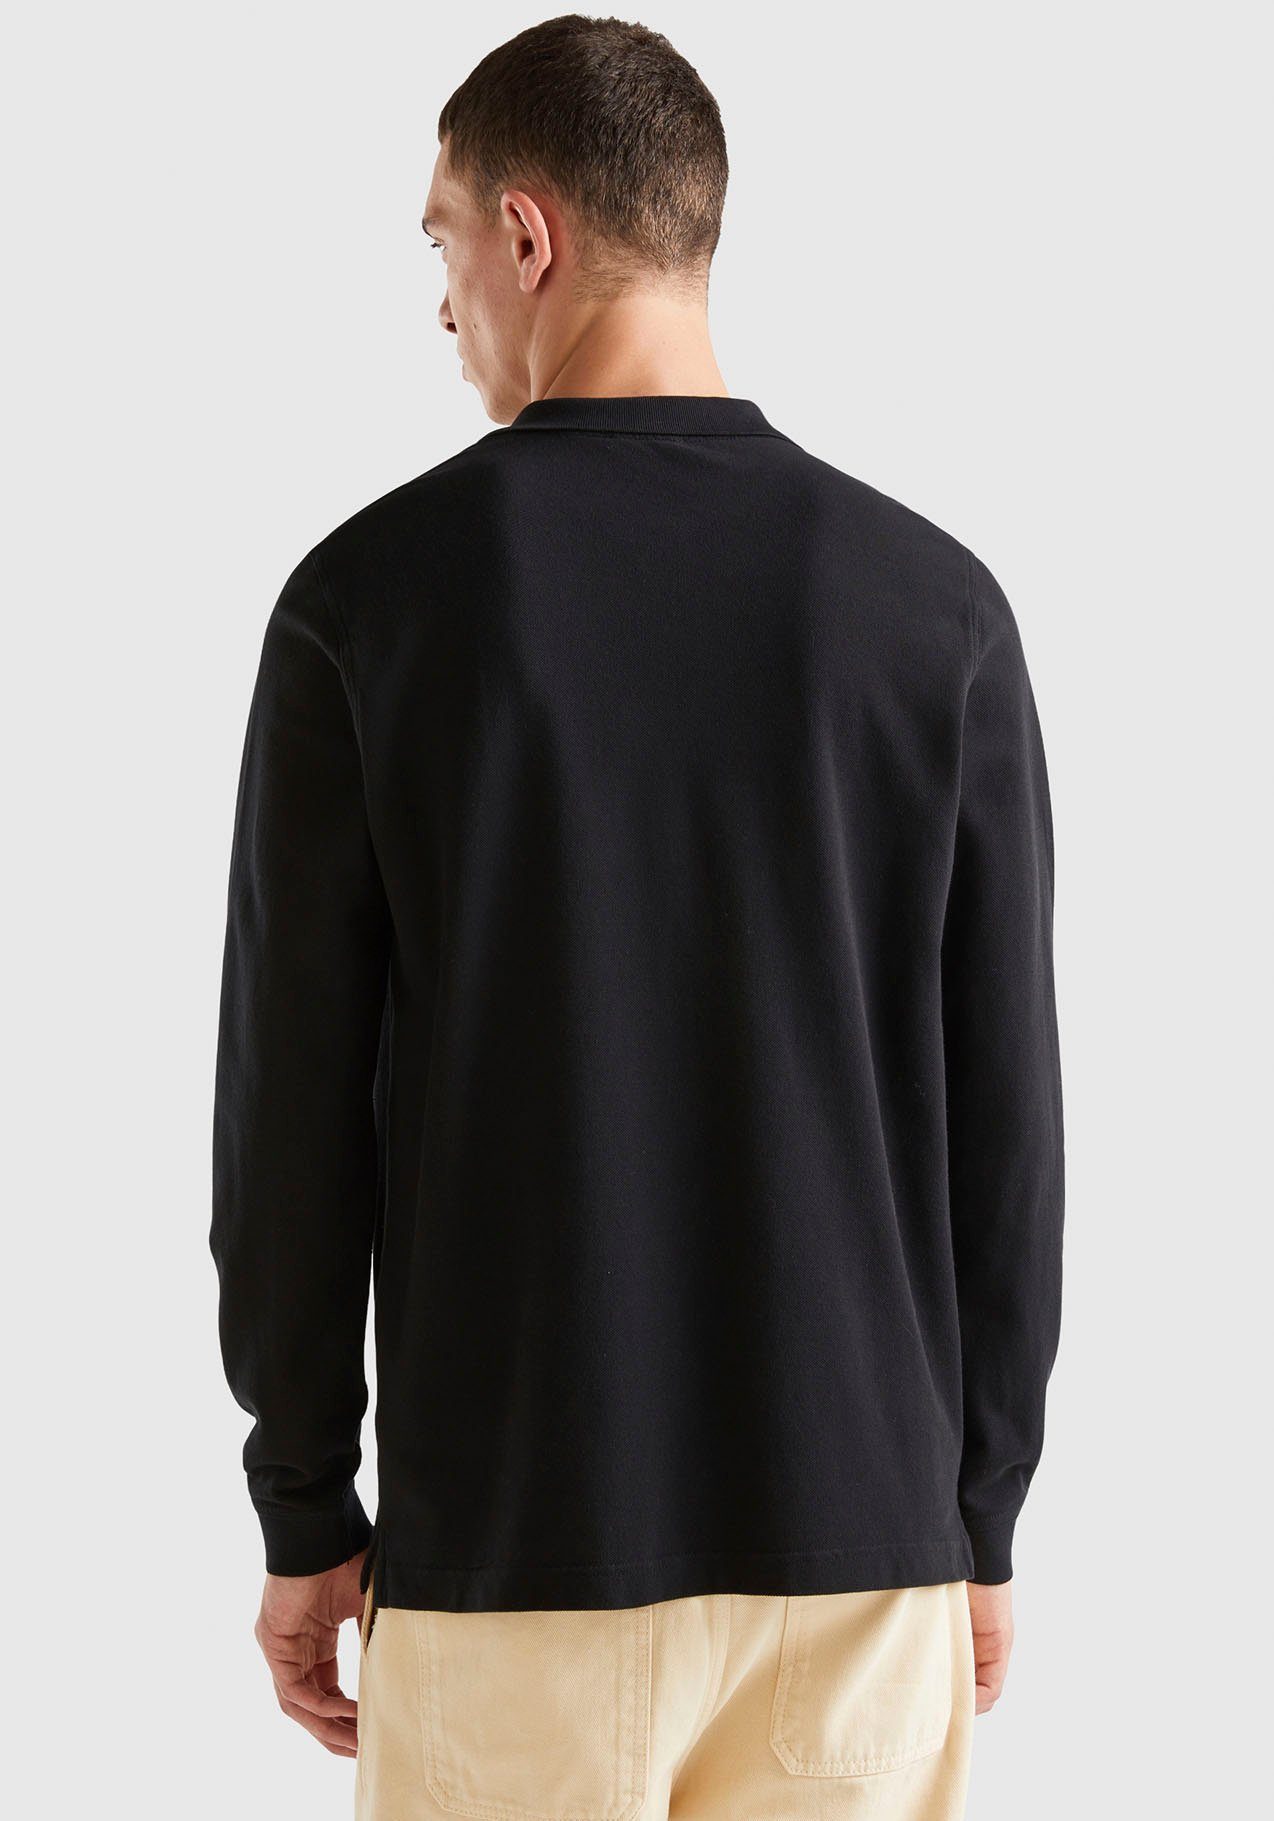 United Colors of Benetton schwarz kleinen seitlichen, Langarm-Poloshirt Schlitzen mit